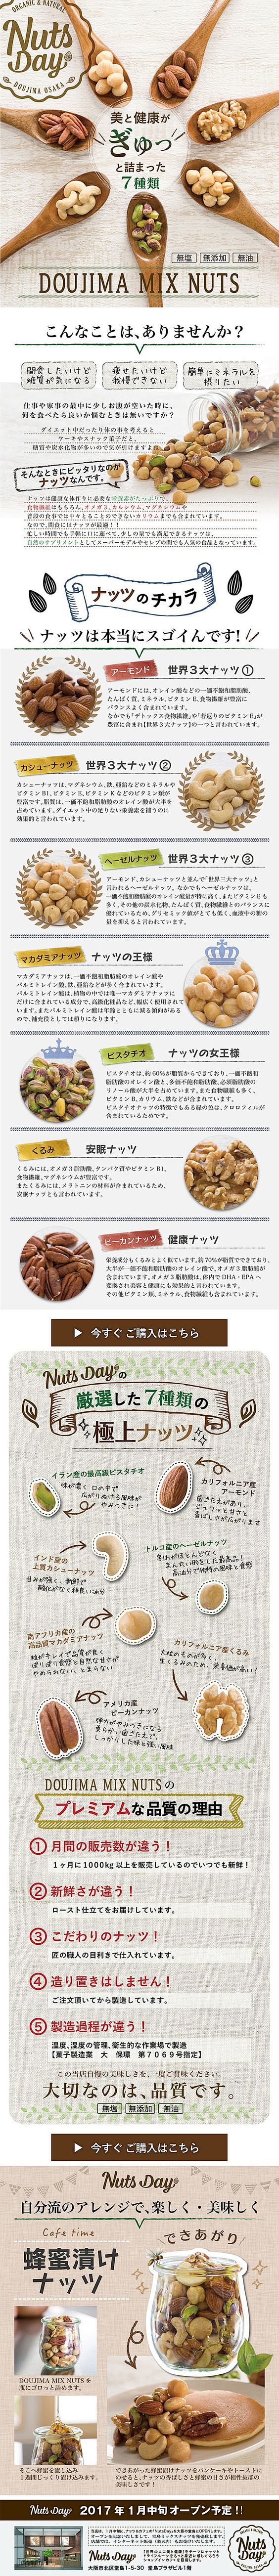 7種類の堂島ナッツ【食品関連】のLPデザ...